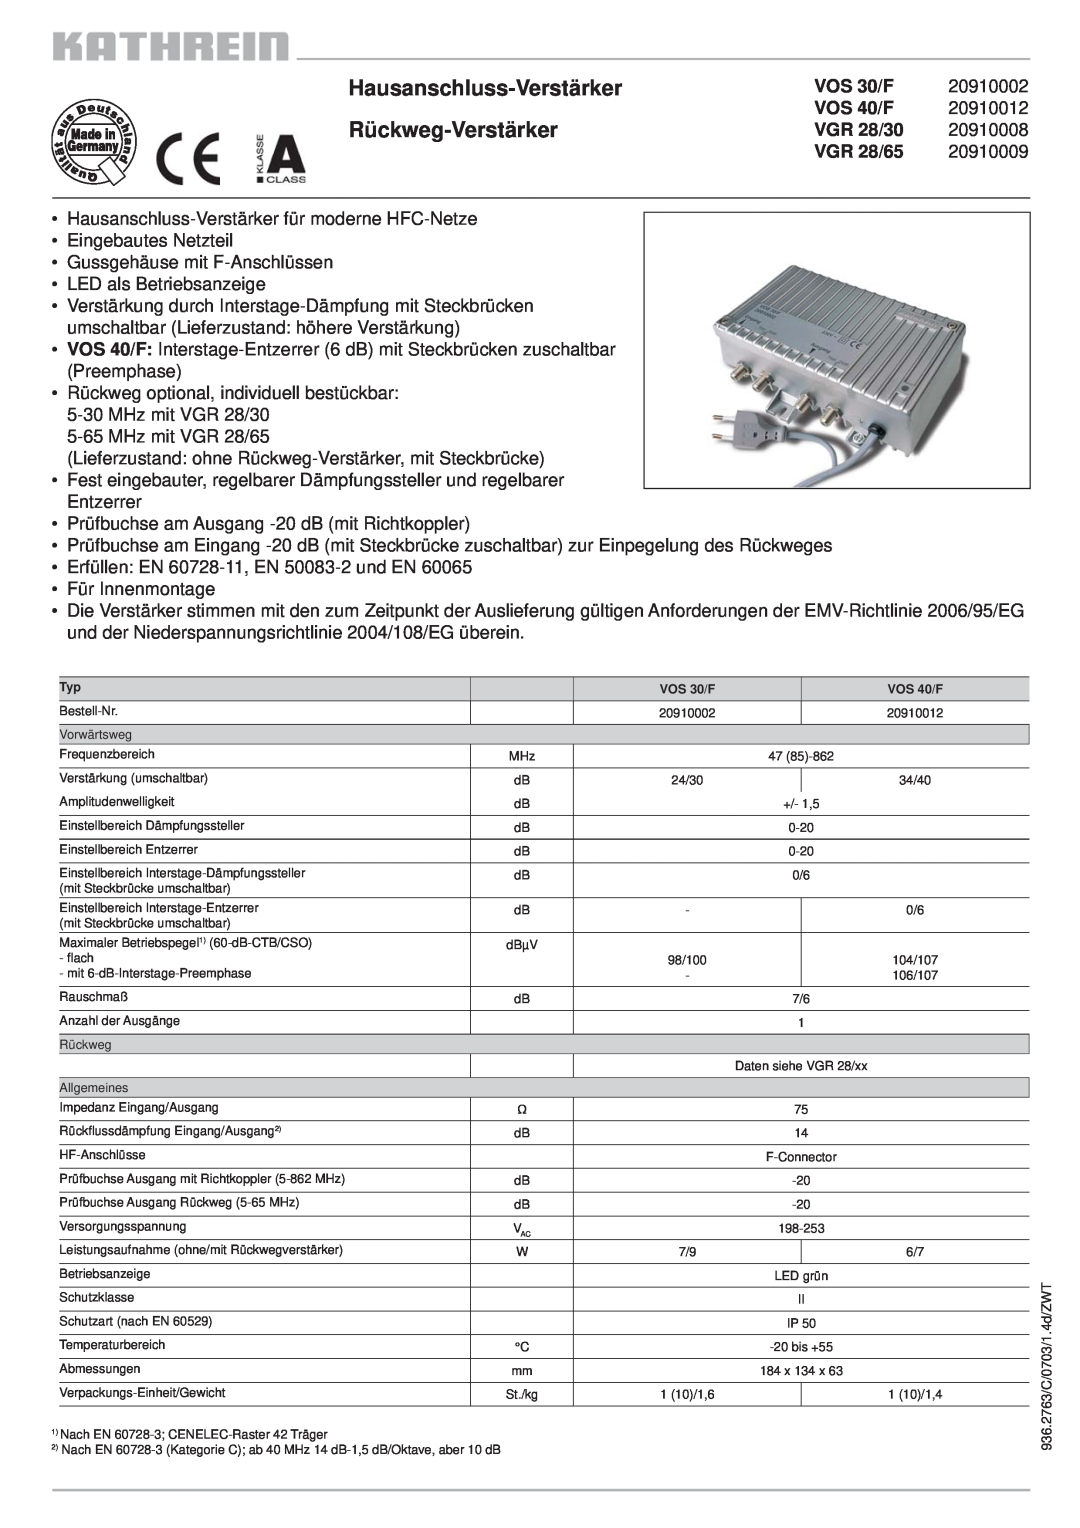 Kathrein VOS 30/F manual Hausanschluss-Verstärker Rückweg-Verstärker, 20910002, VOS 40/F, 20910012, VGR 28/30, 20910008 